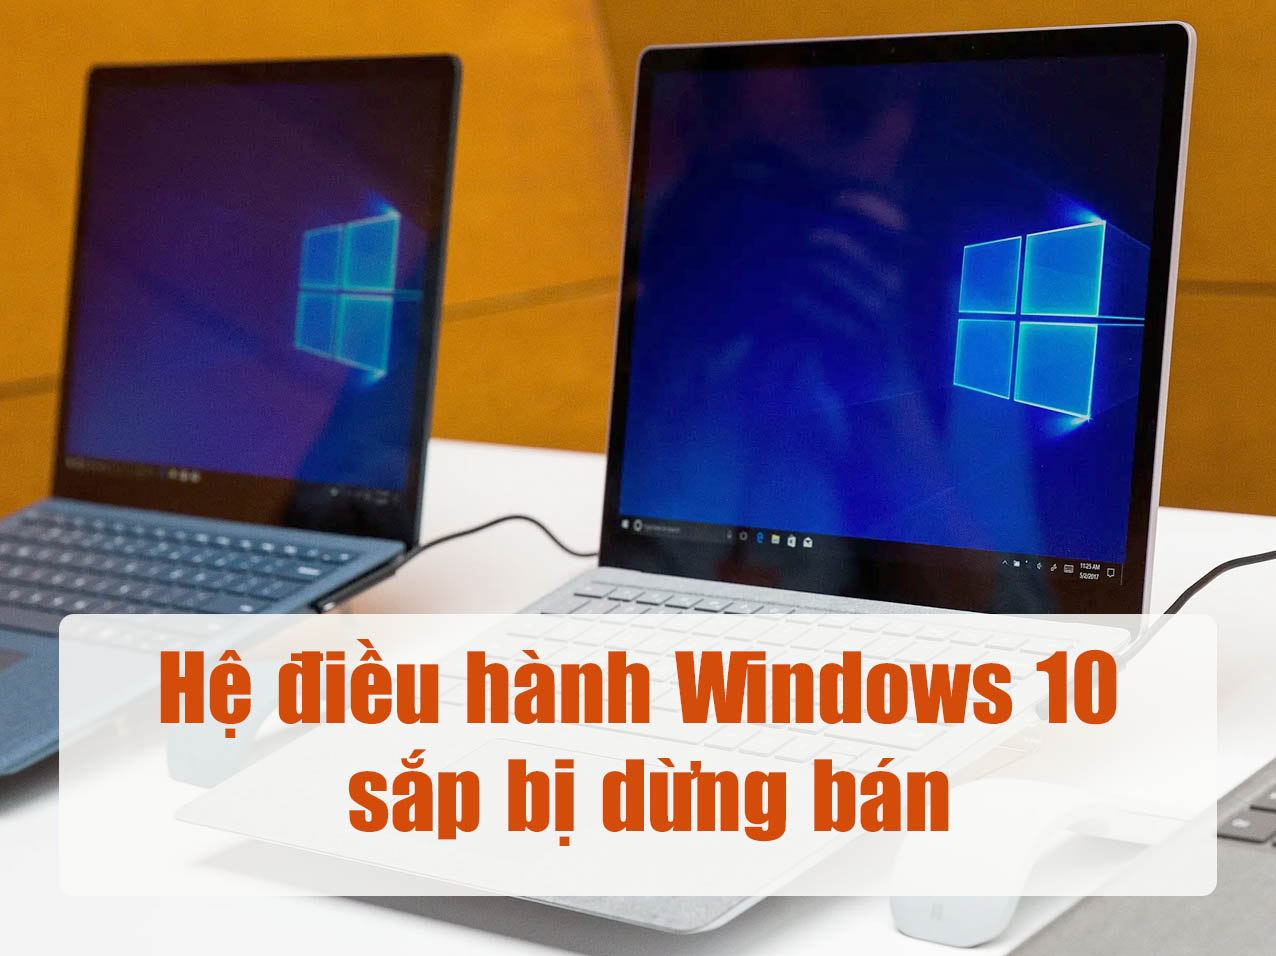 Hệ điều hành Windows 10 sắp bị dừng bán